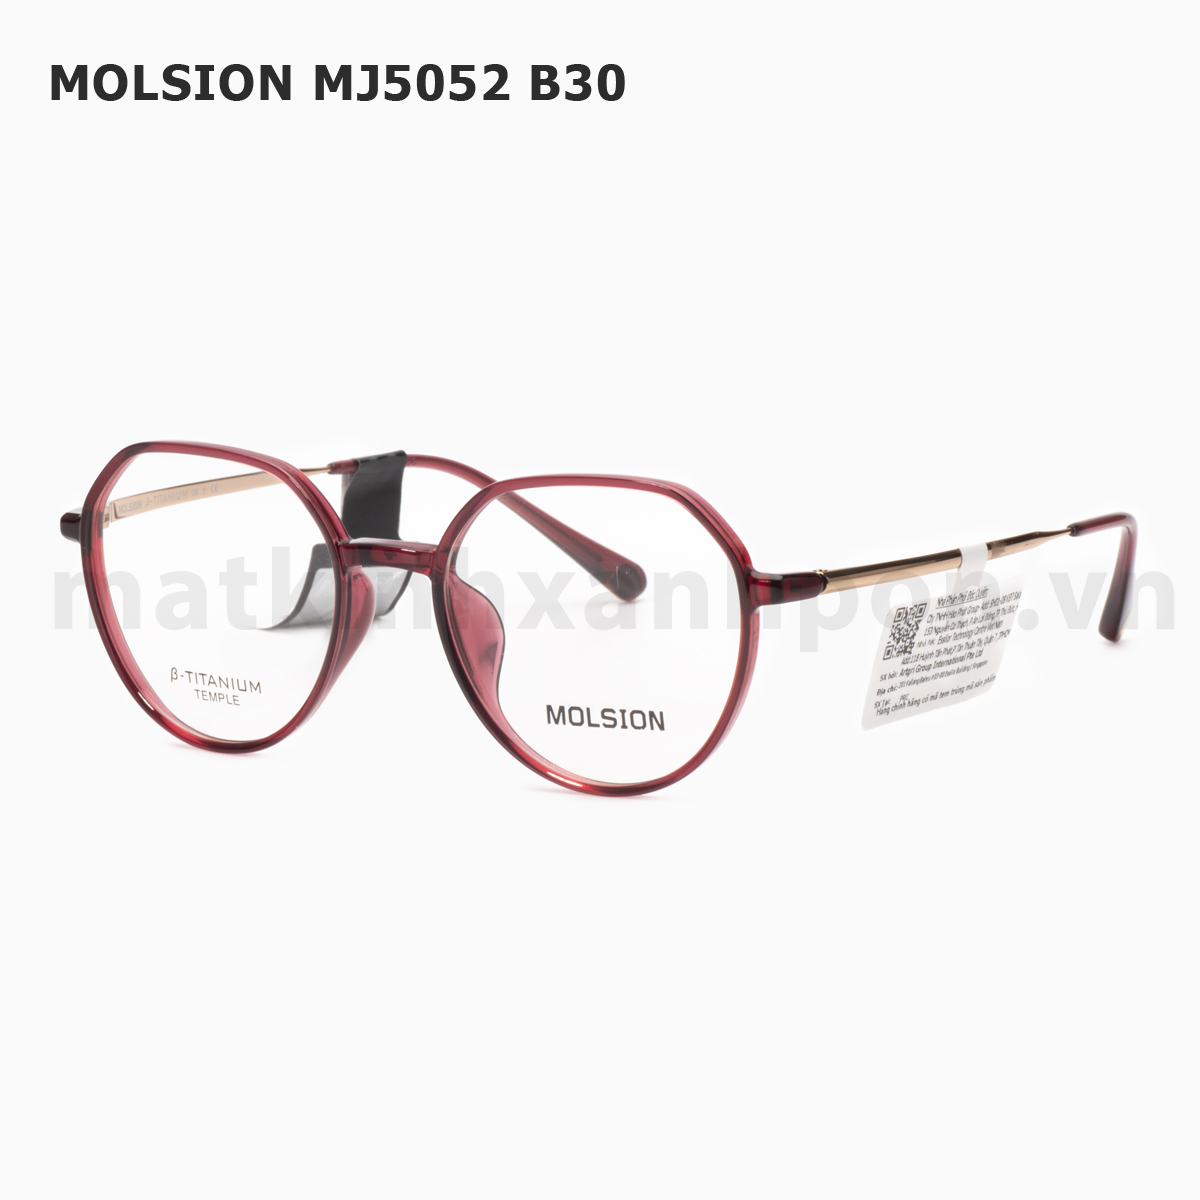 Molsion MJ5052 B30